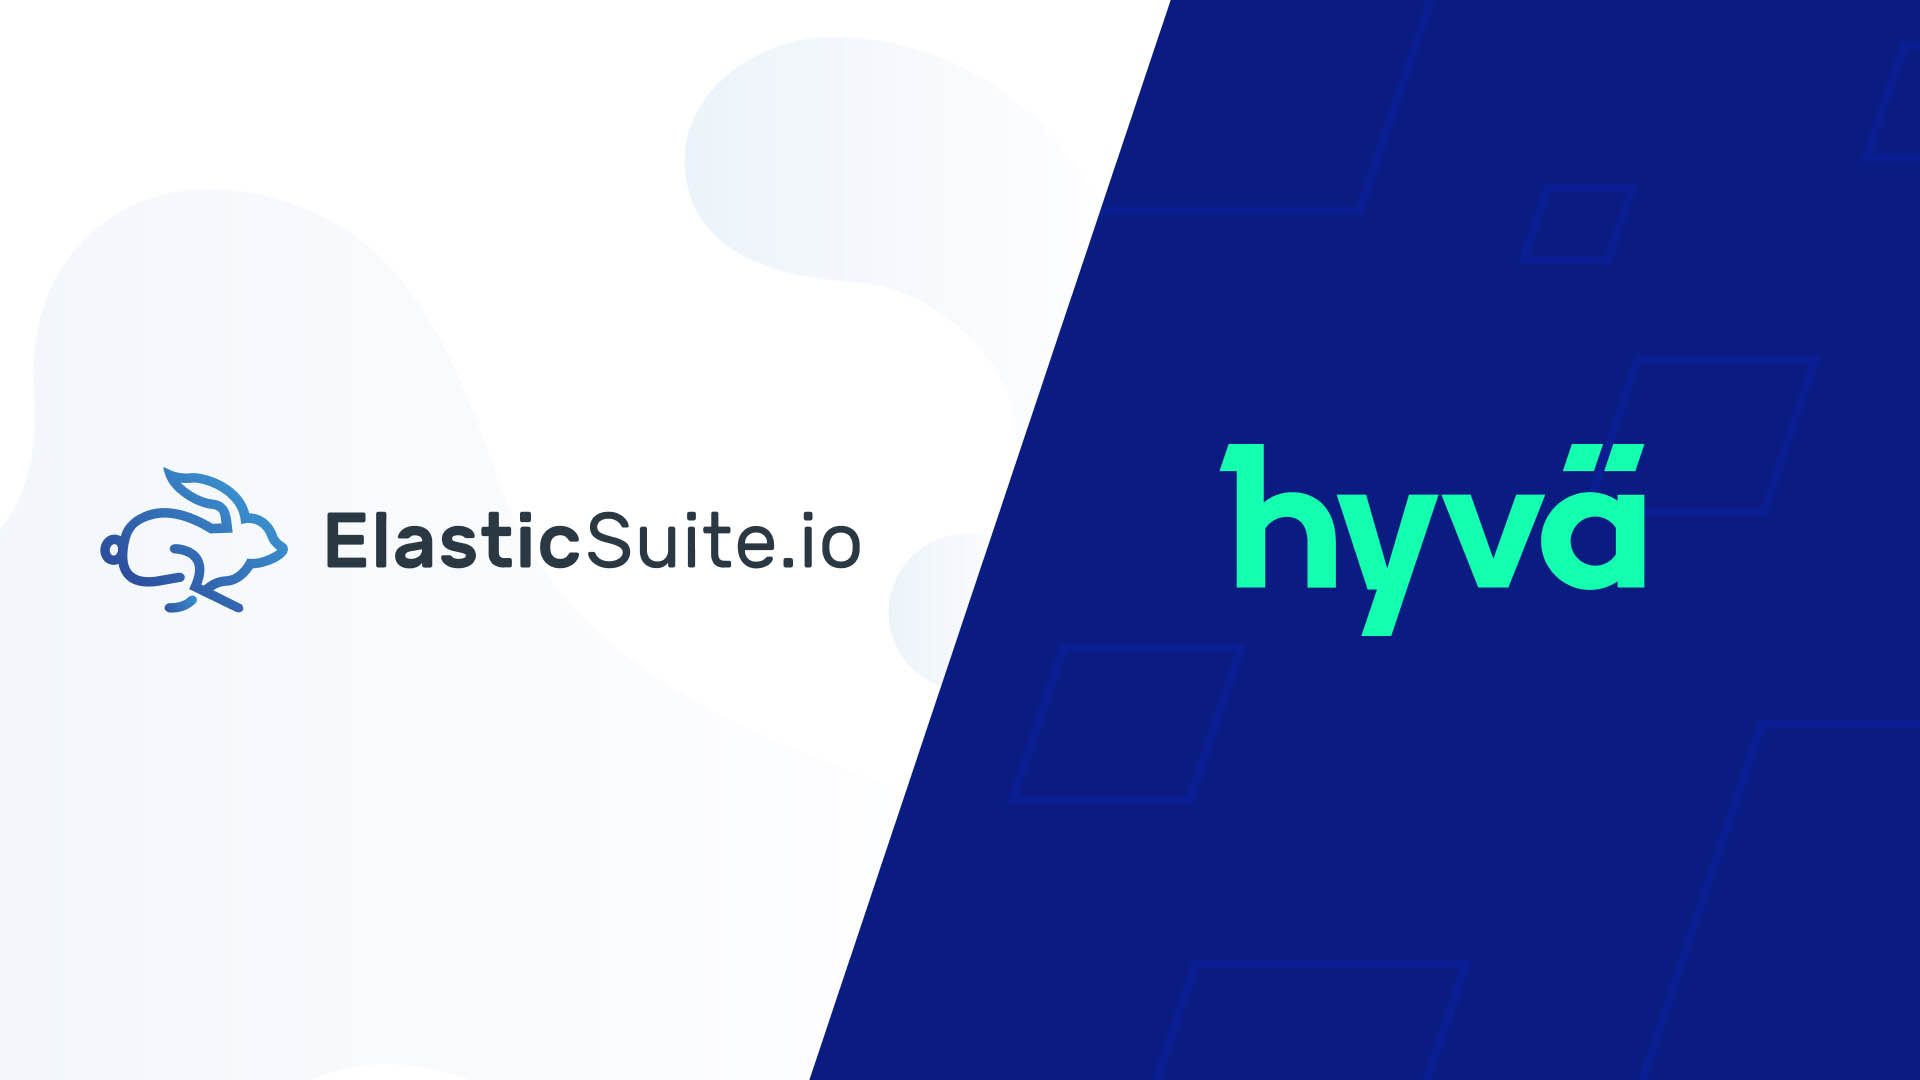 Elasticsuite.io and Hyvä partnership